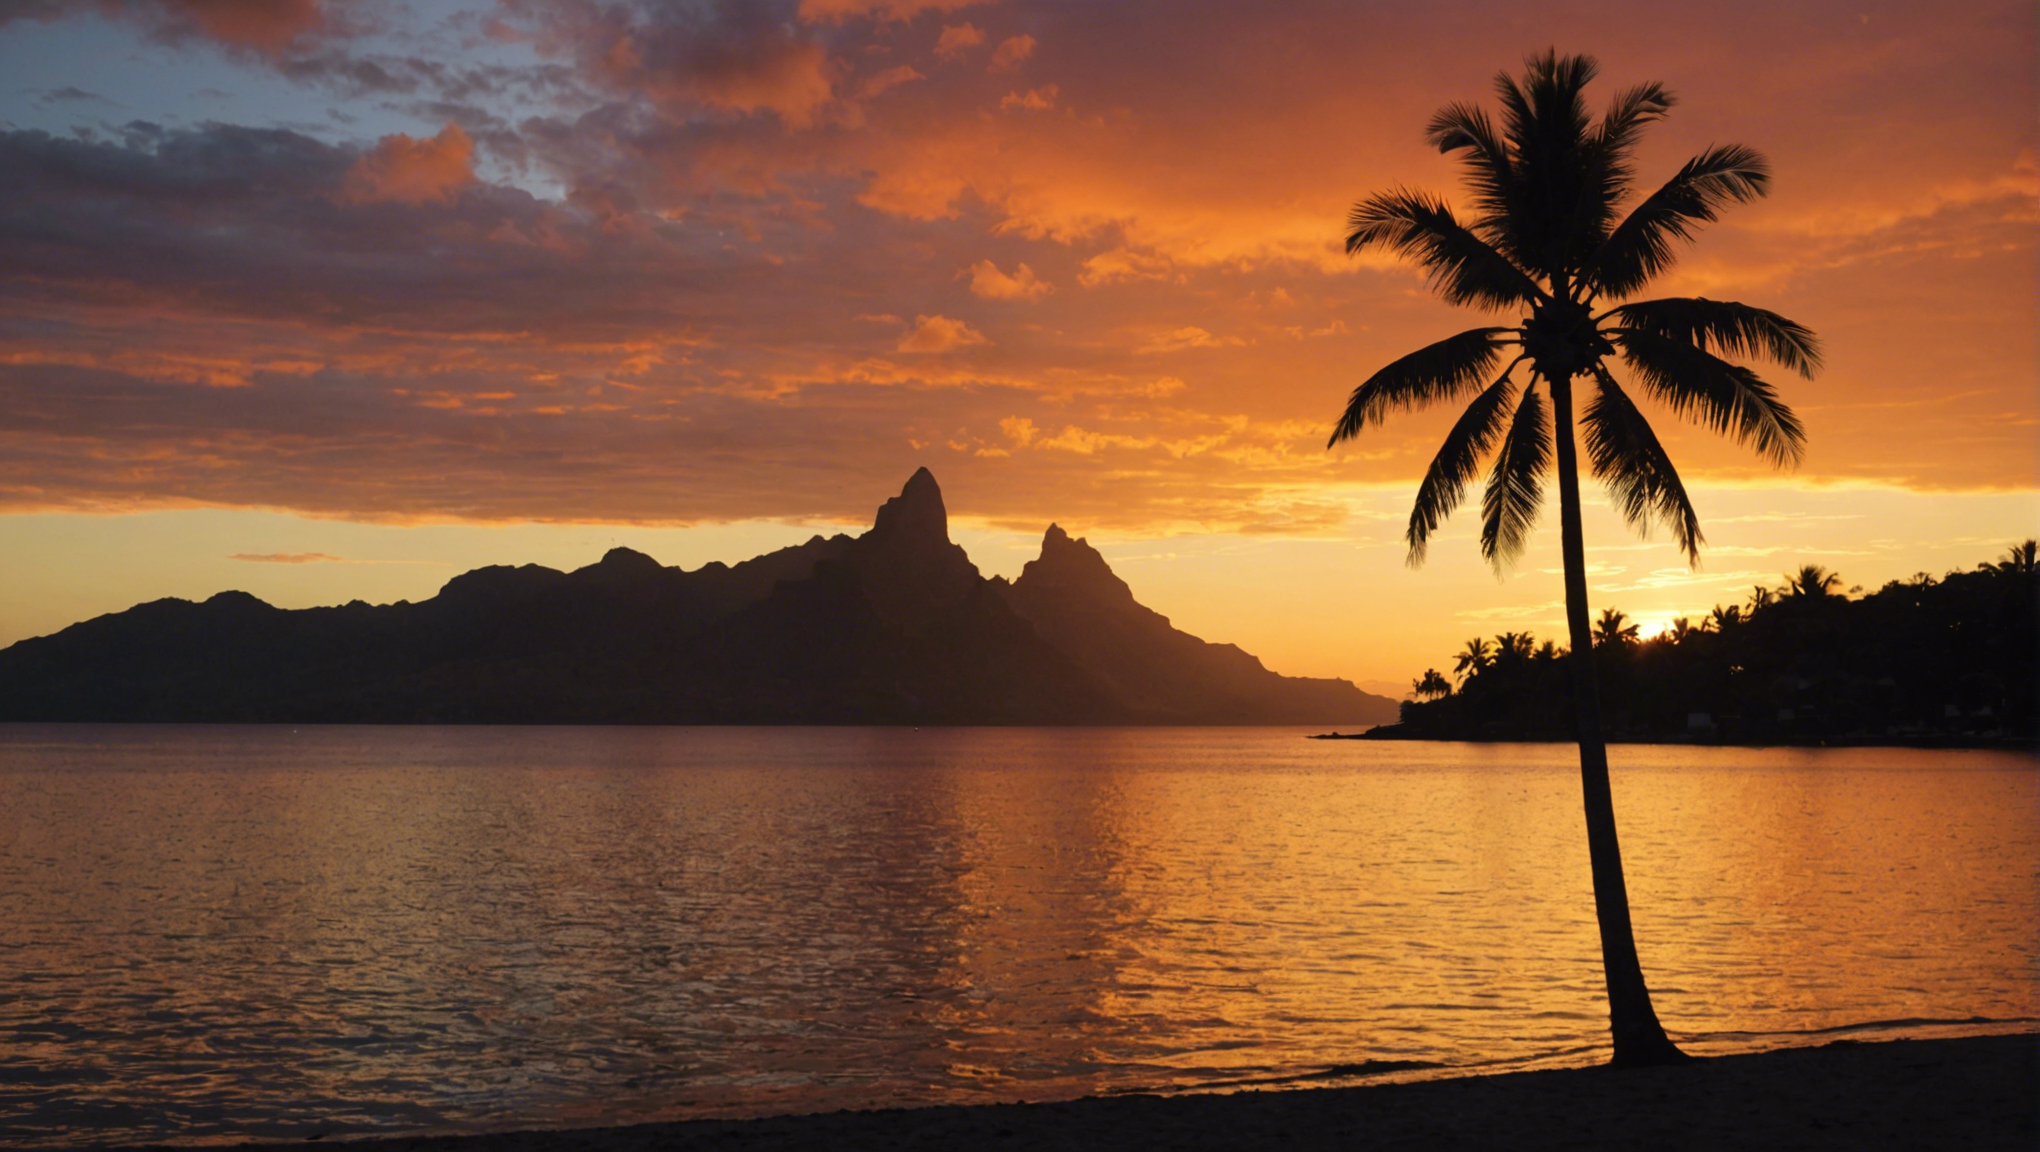 découvrez où admirer le coucher de soleil le plus romantique à tahiti, avec des vues à couper le souffle et des moments inoubliables à partager en amoureux.